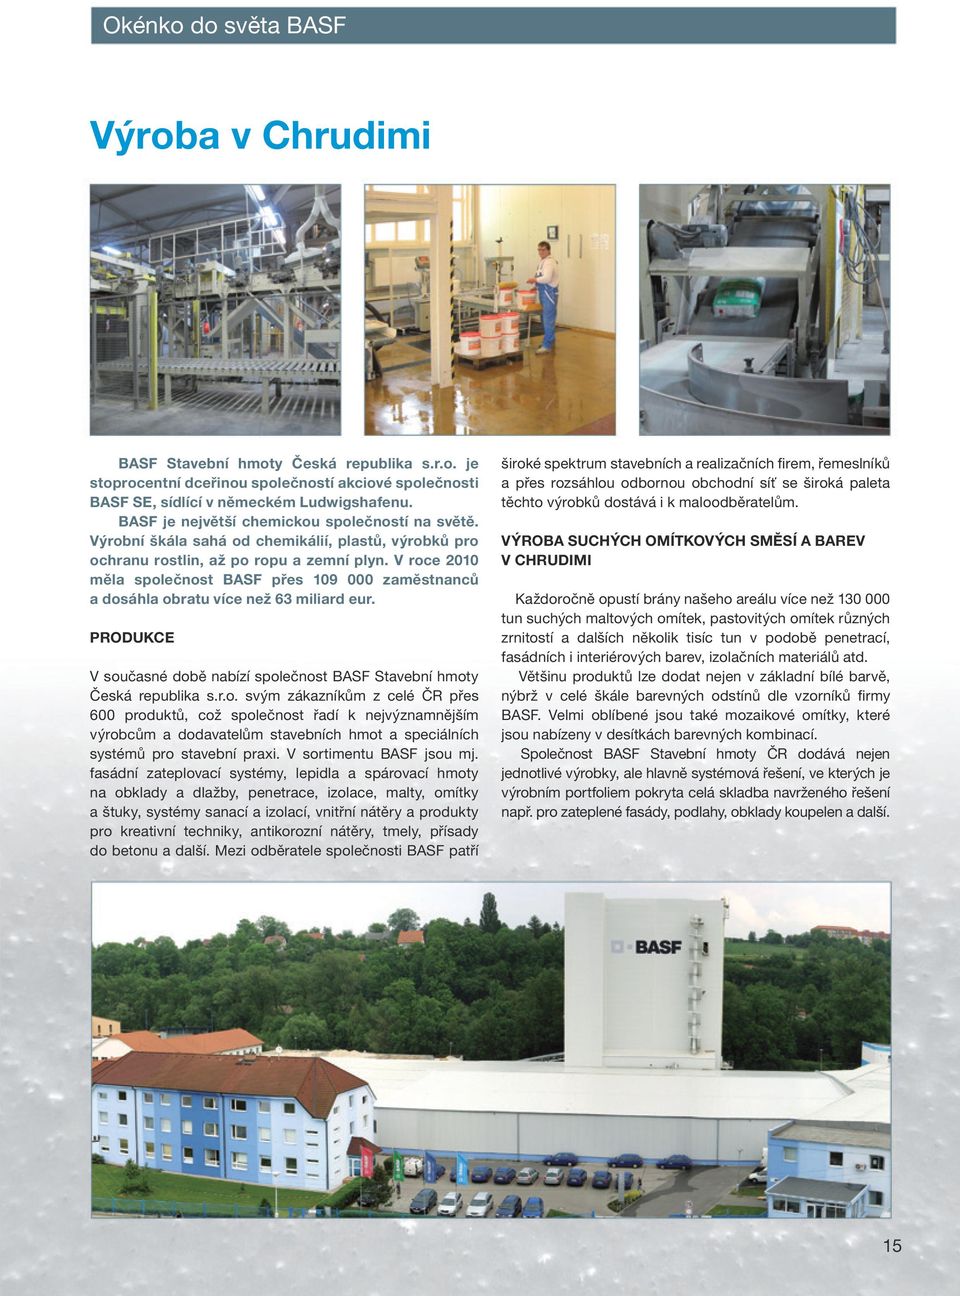 V roce 2010 měla společnost BASF přes 109 000 zaměstnanců a dosáhla obratu více než 63 miliard eur. PRODUKCE V současné době nabízí společnost BASF Stavební hmoty Česká republika s.r.o. svým zákazníkům z celé ČR přes 600 produktů, což společnost řadí k nejvýznamnějším výrobcům a dodavatelům stavebních hmot a speciálních systémů pro stavební praxi.